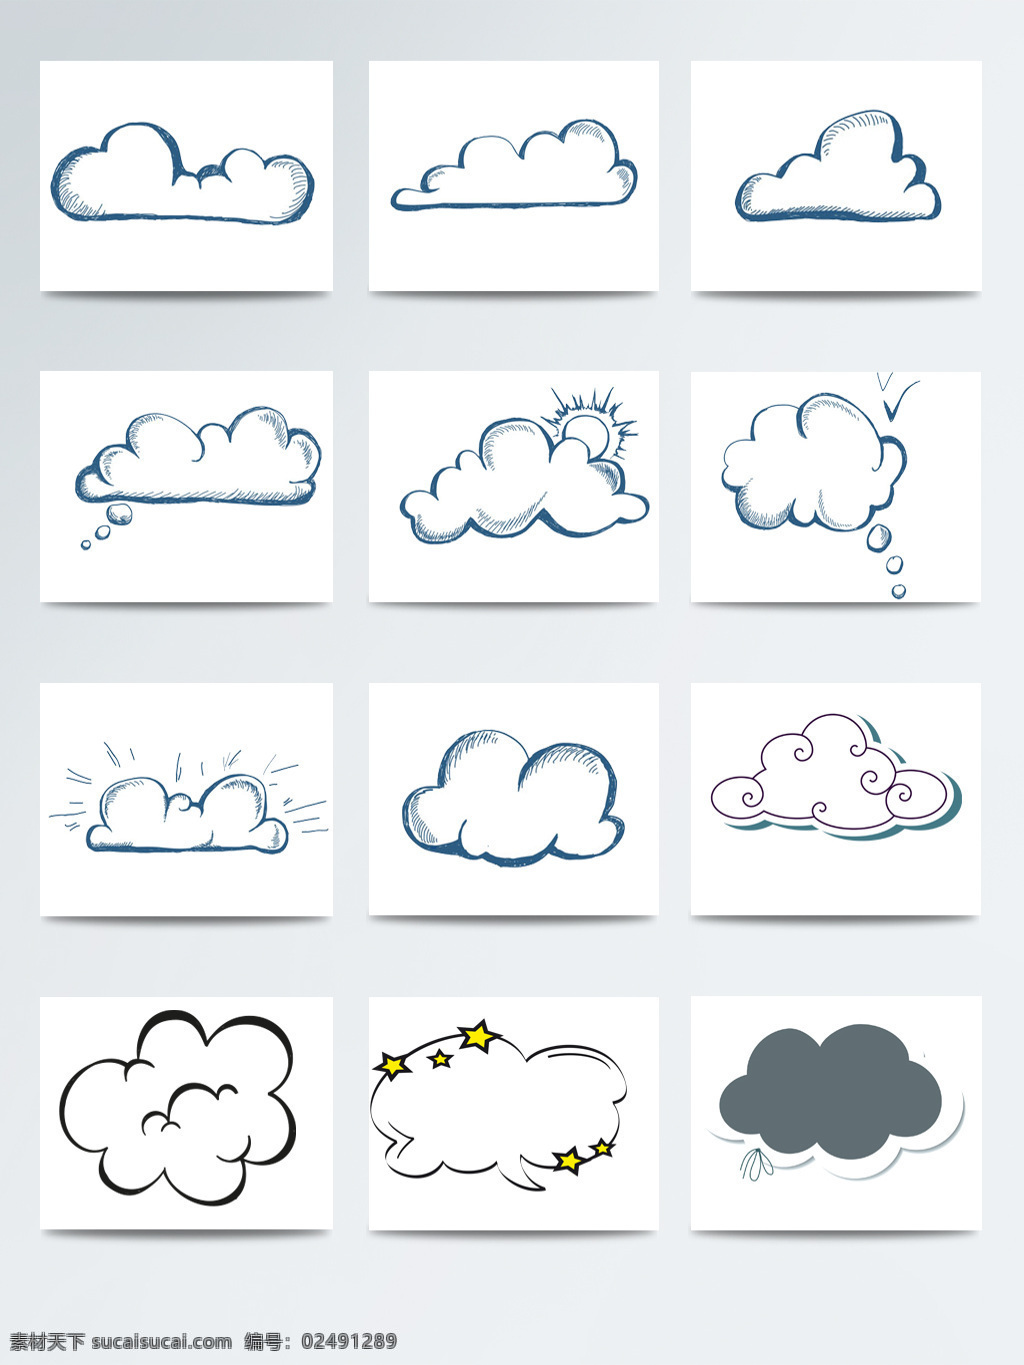 手绘 素描 卡通 白云 元素 卡通白云 卡通素材 可爱白云 可爱卡通 手绘白云 速写 云朵对话框 装饰 装饰图案